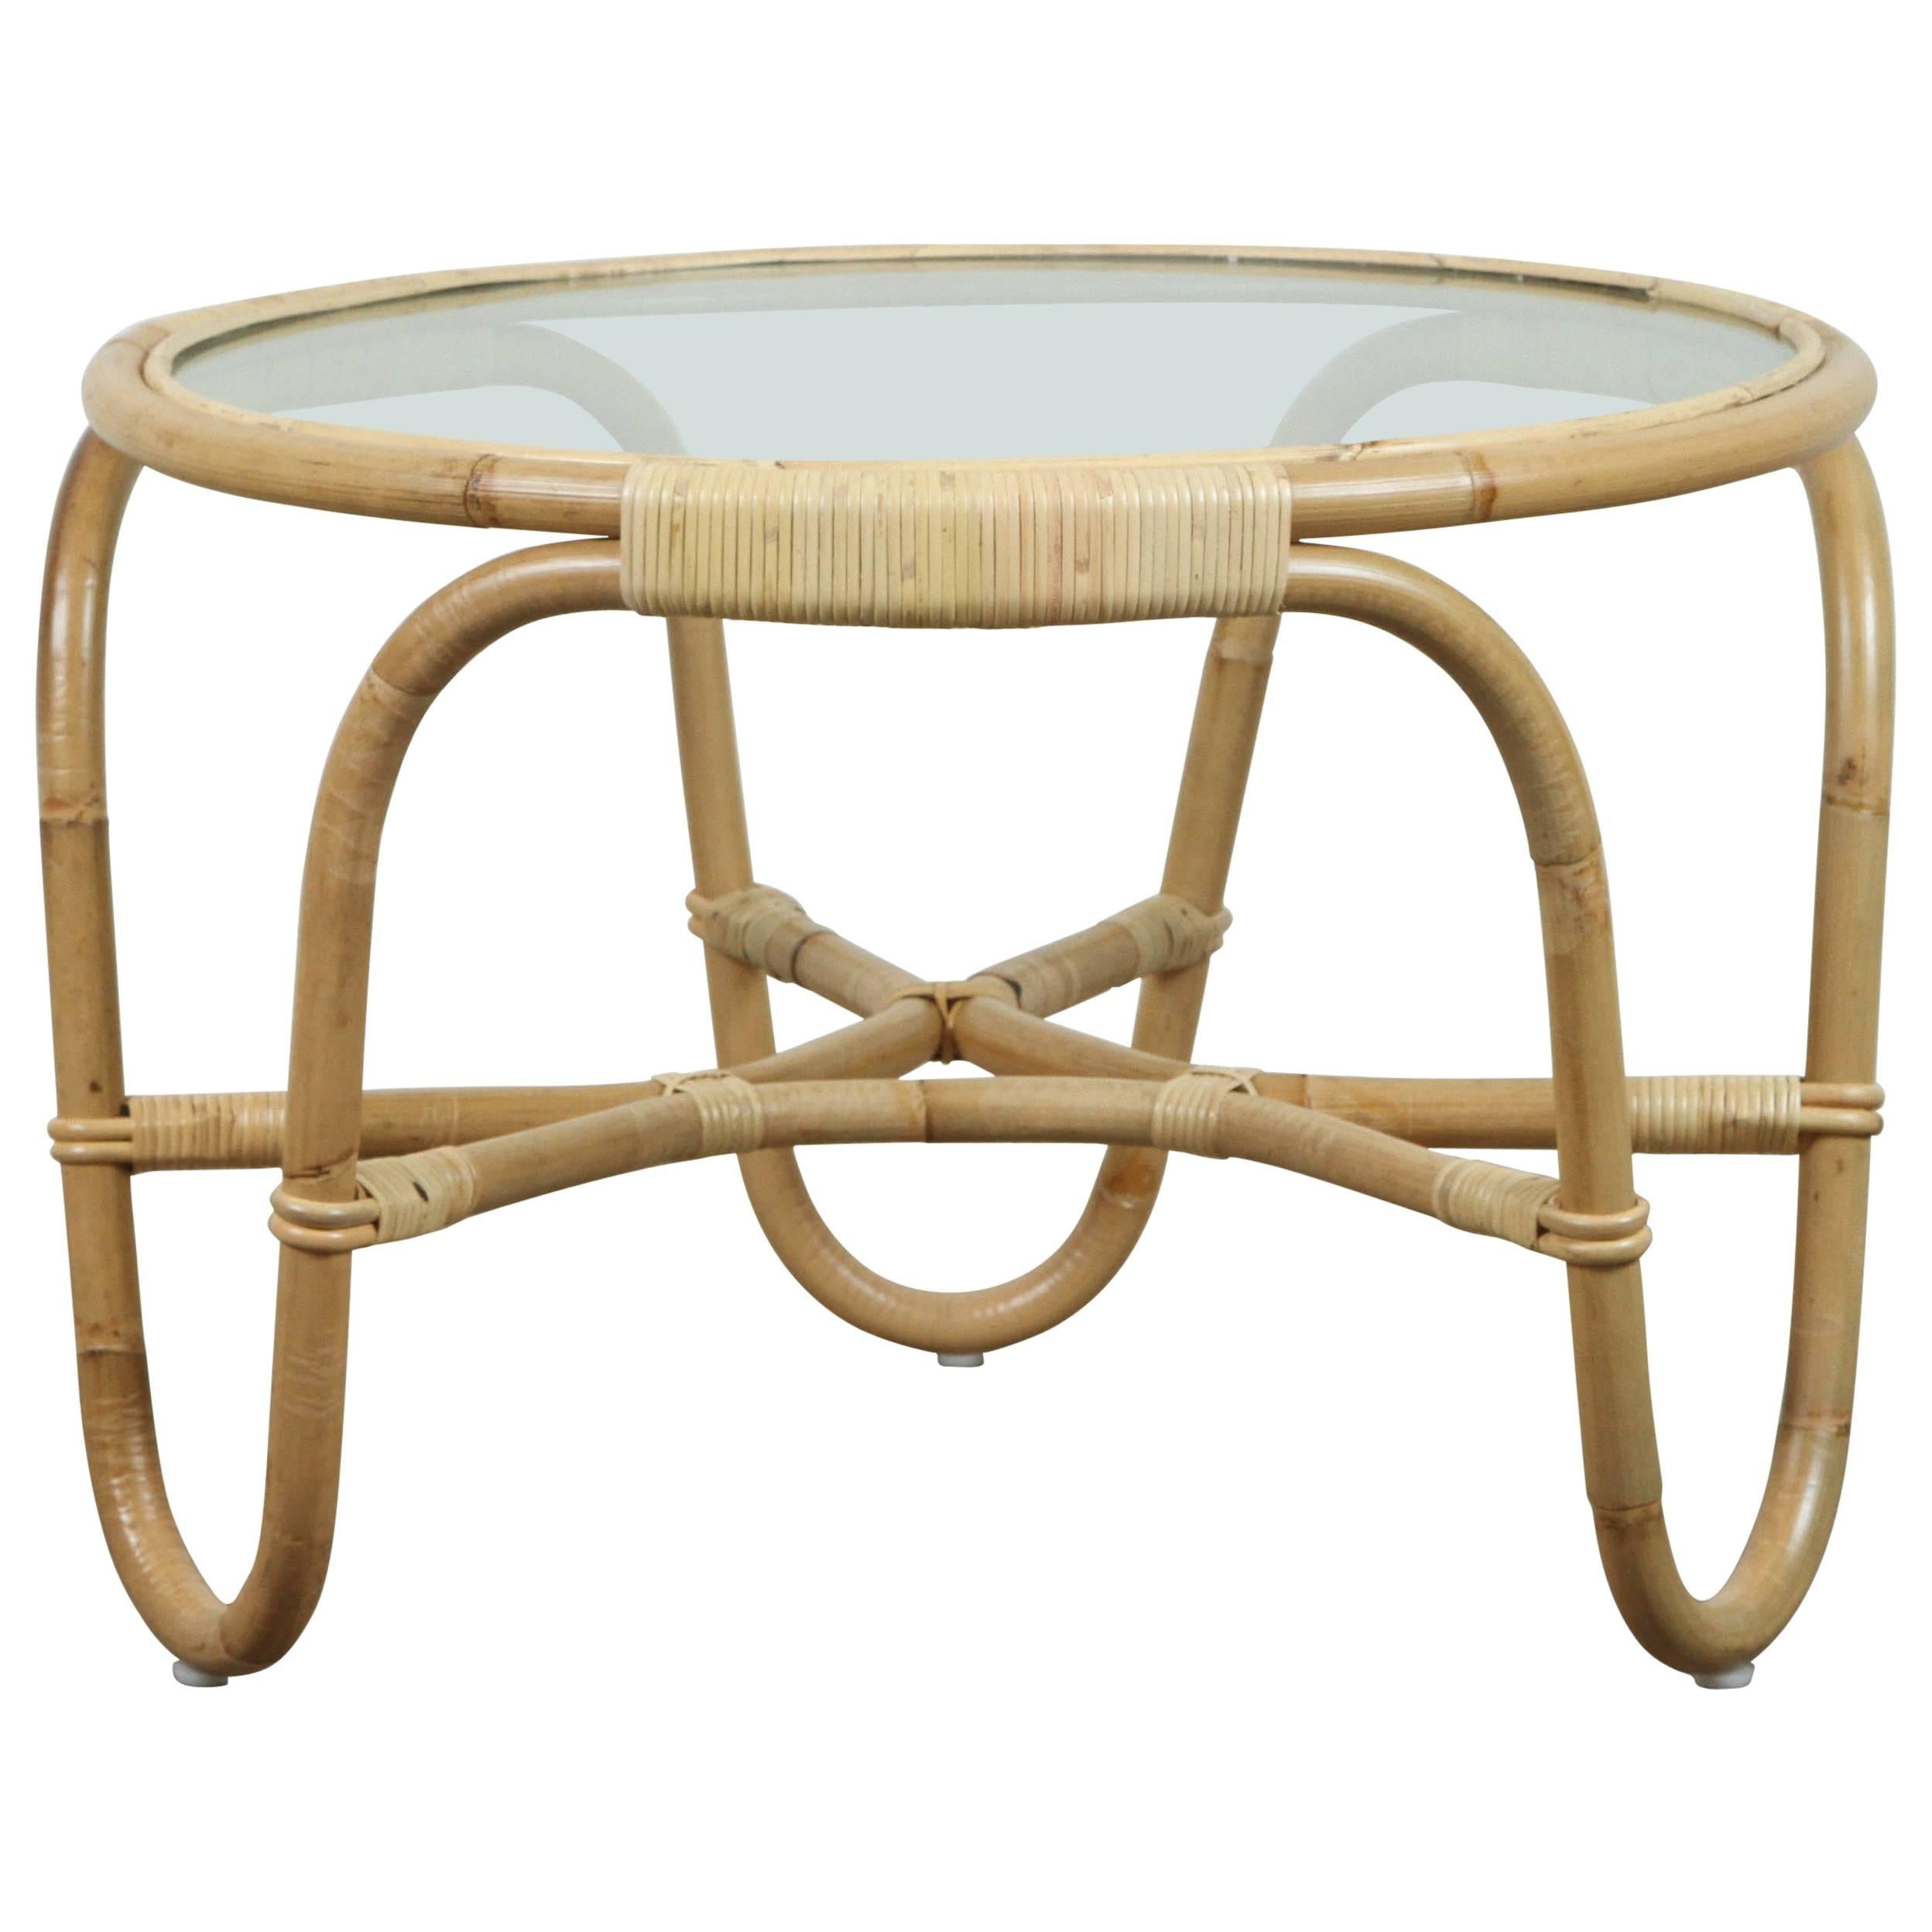 Charlottenborg Table by Arne Jacobsen